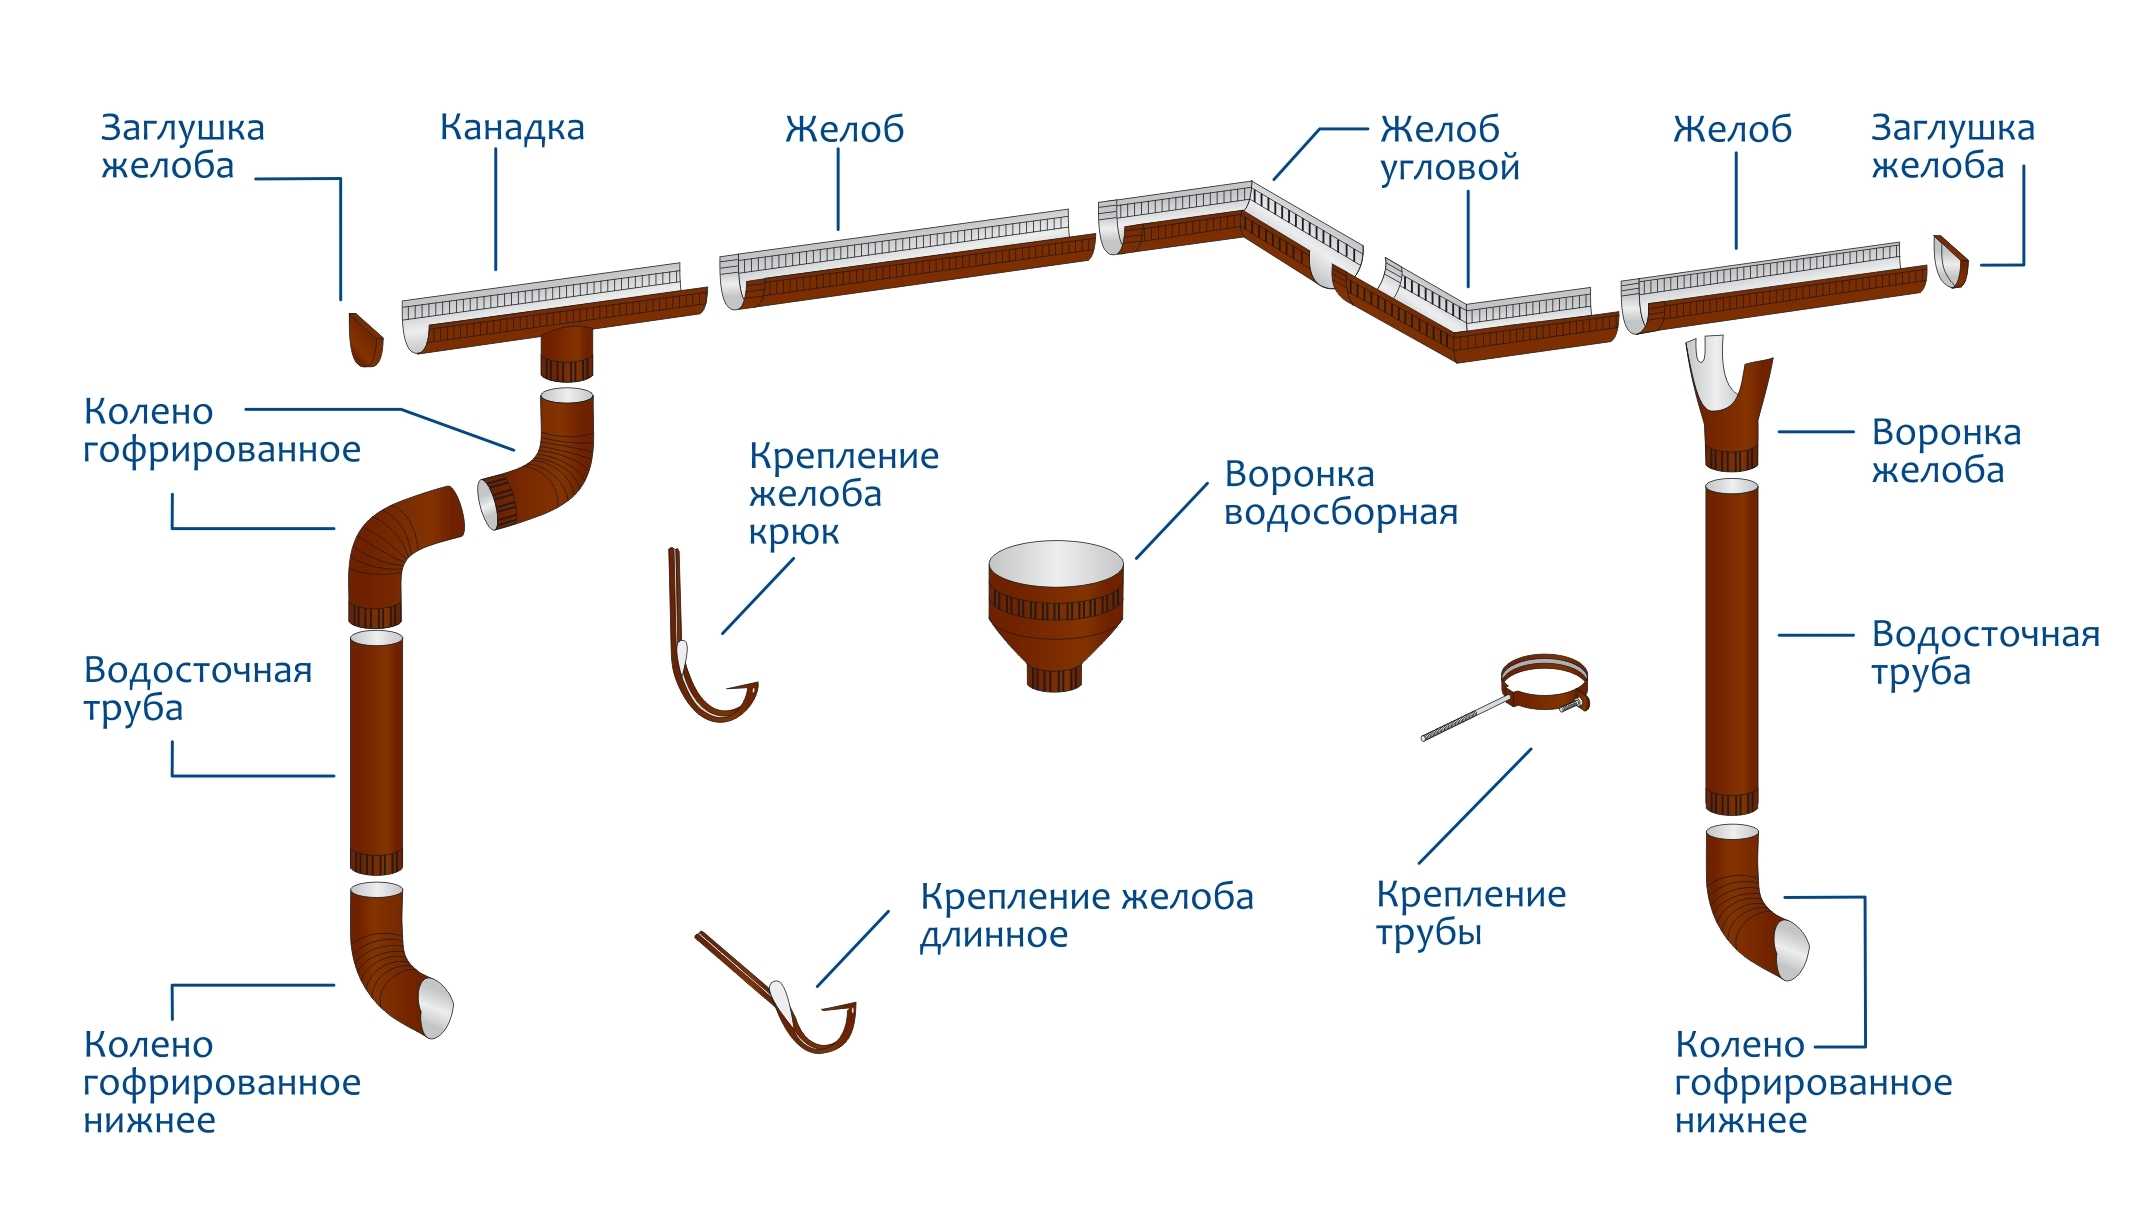 Системы стока воды. Водосточная система Гранд лайн металлическая схема. Схема установки водостока на крыше. Схема монтажа водосточного желоба. Схема крепления водосточной системы.